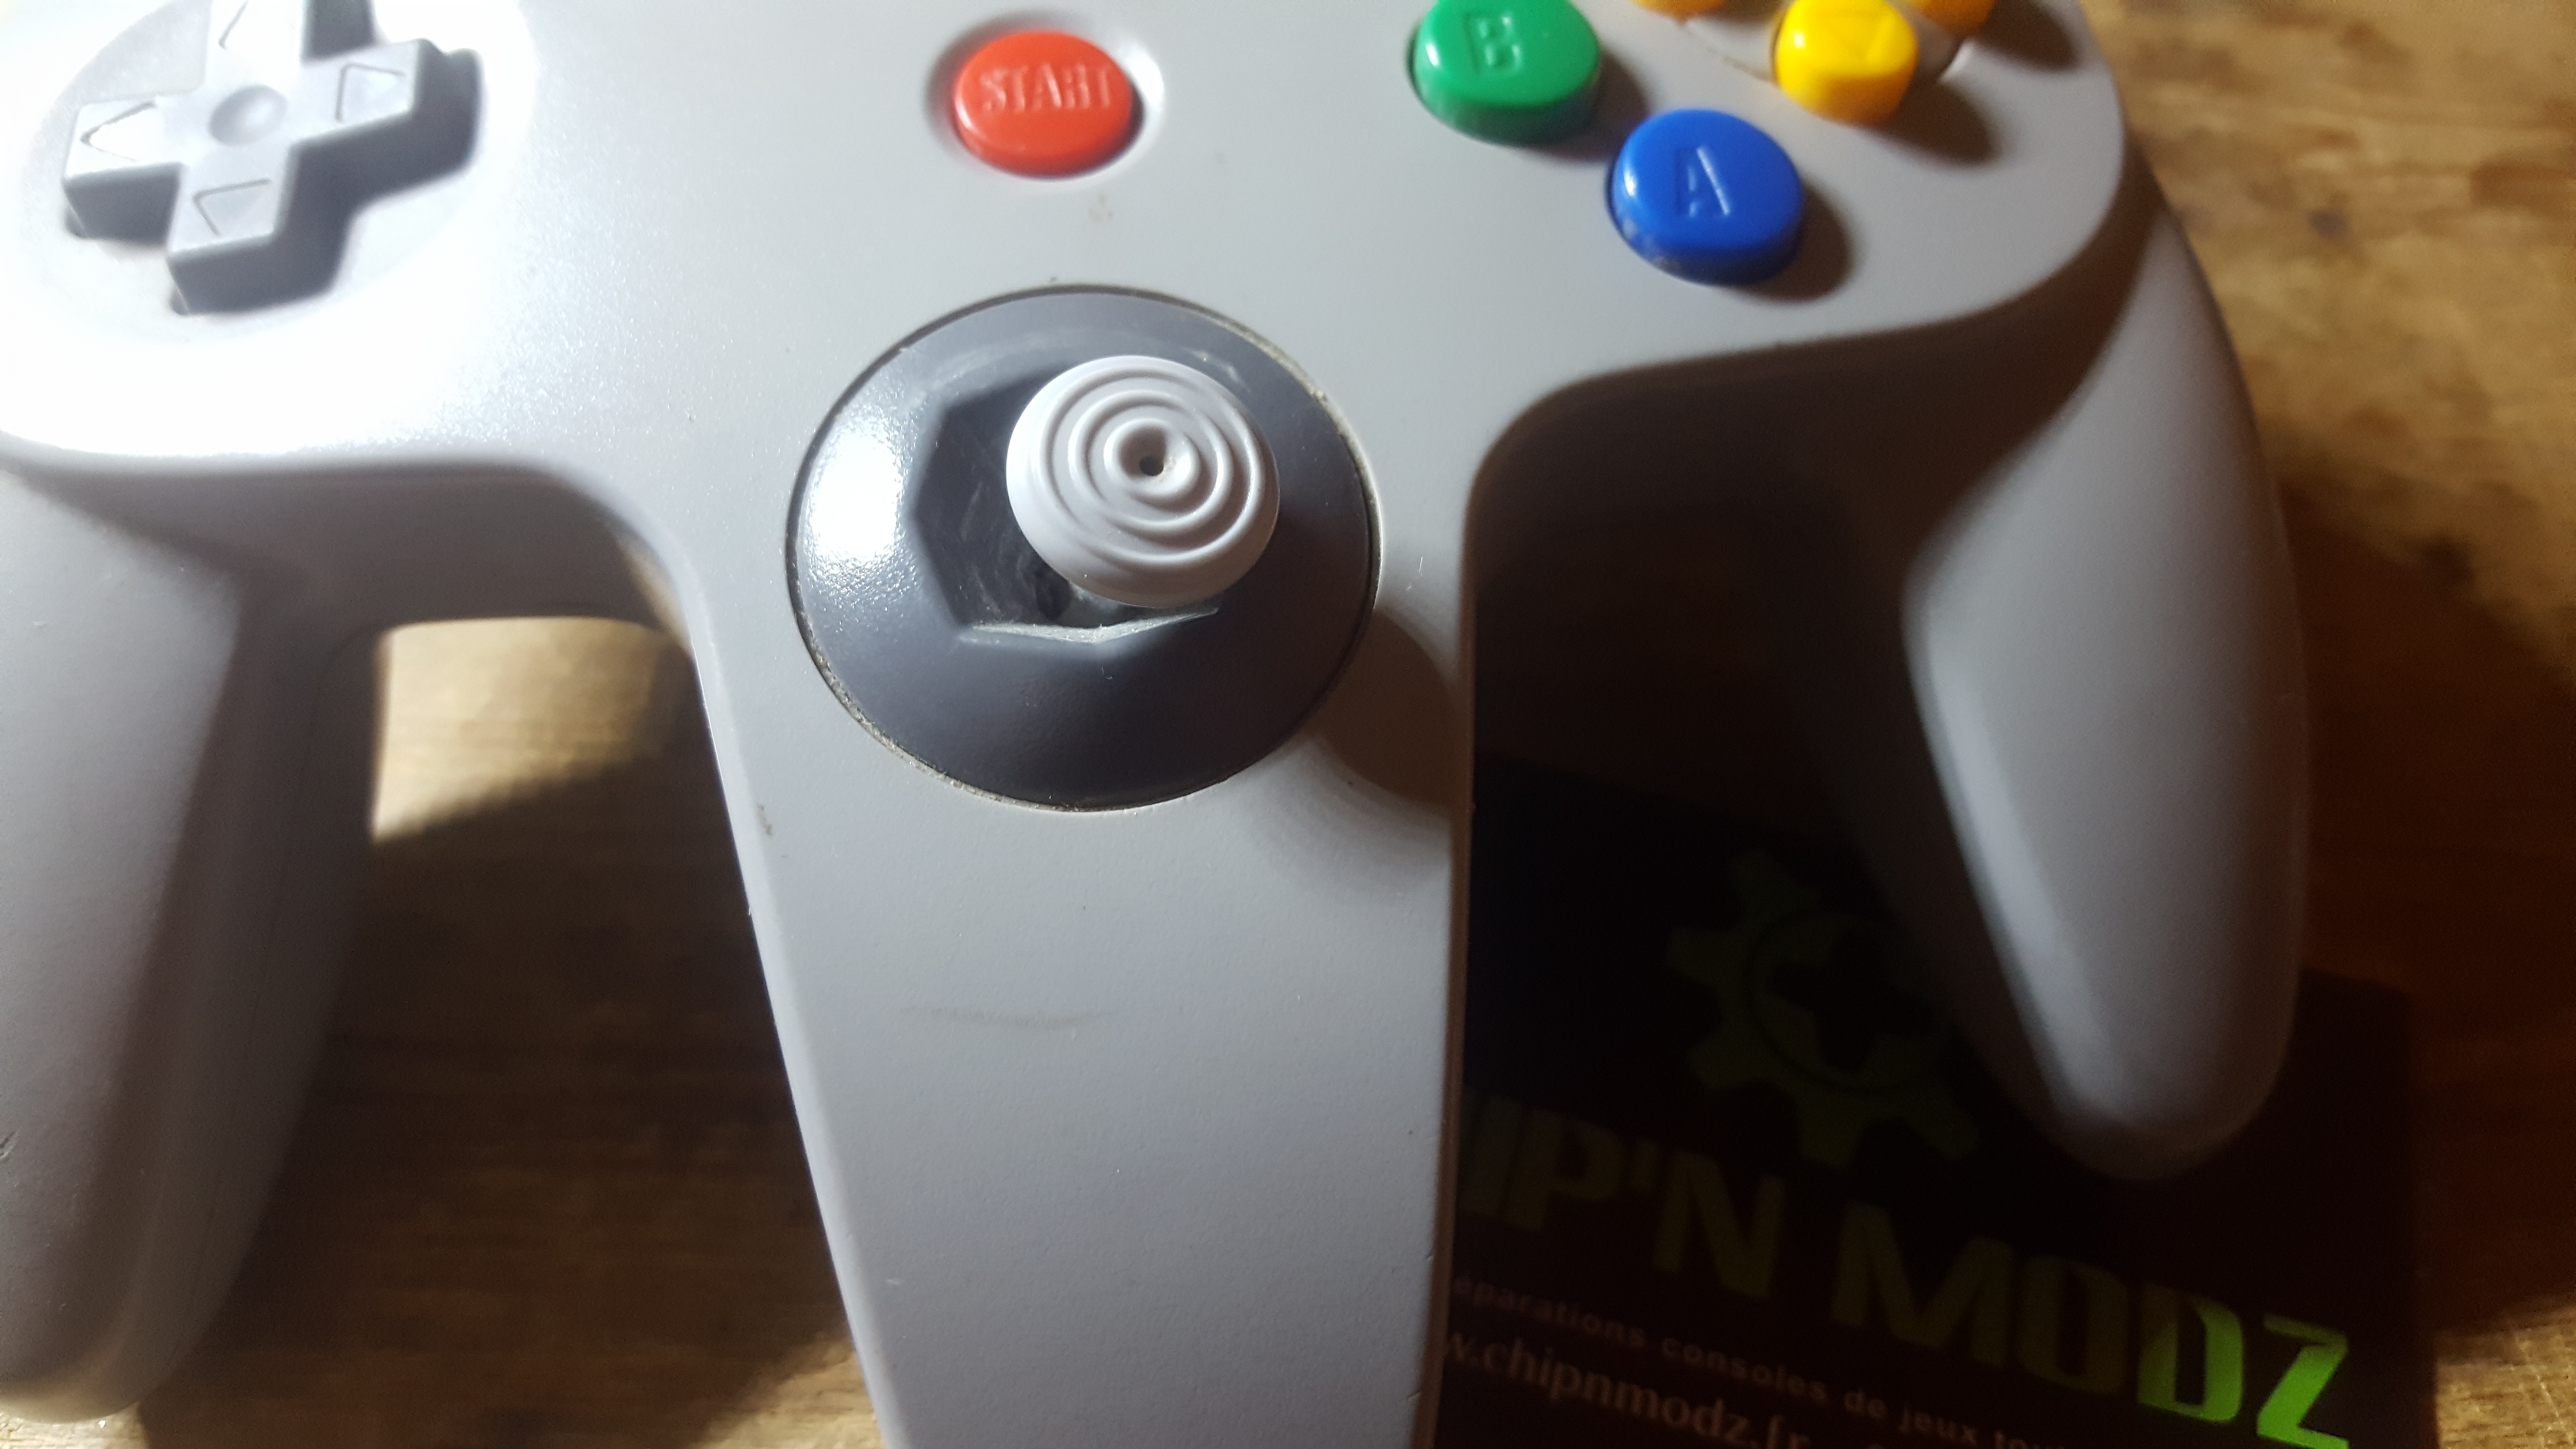 [TUTO] Remplacer le Joystick de la manette Nintendo 64